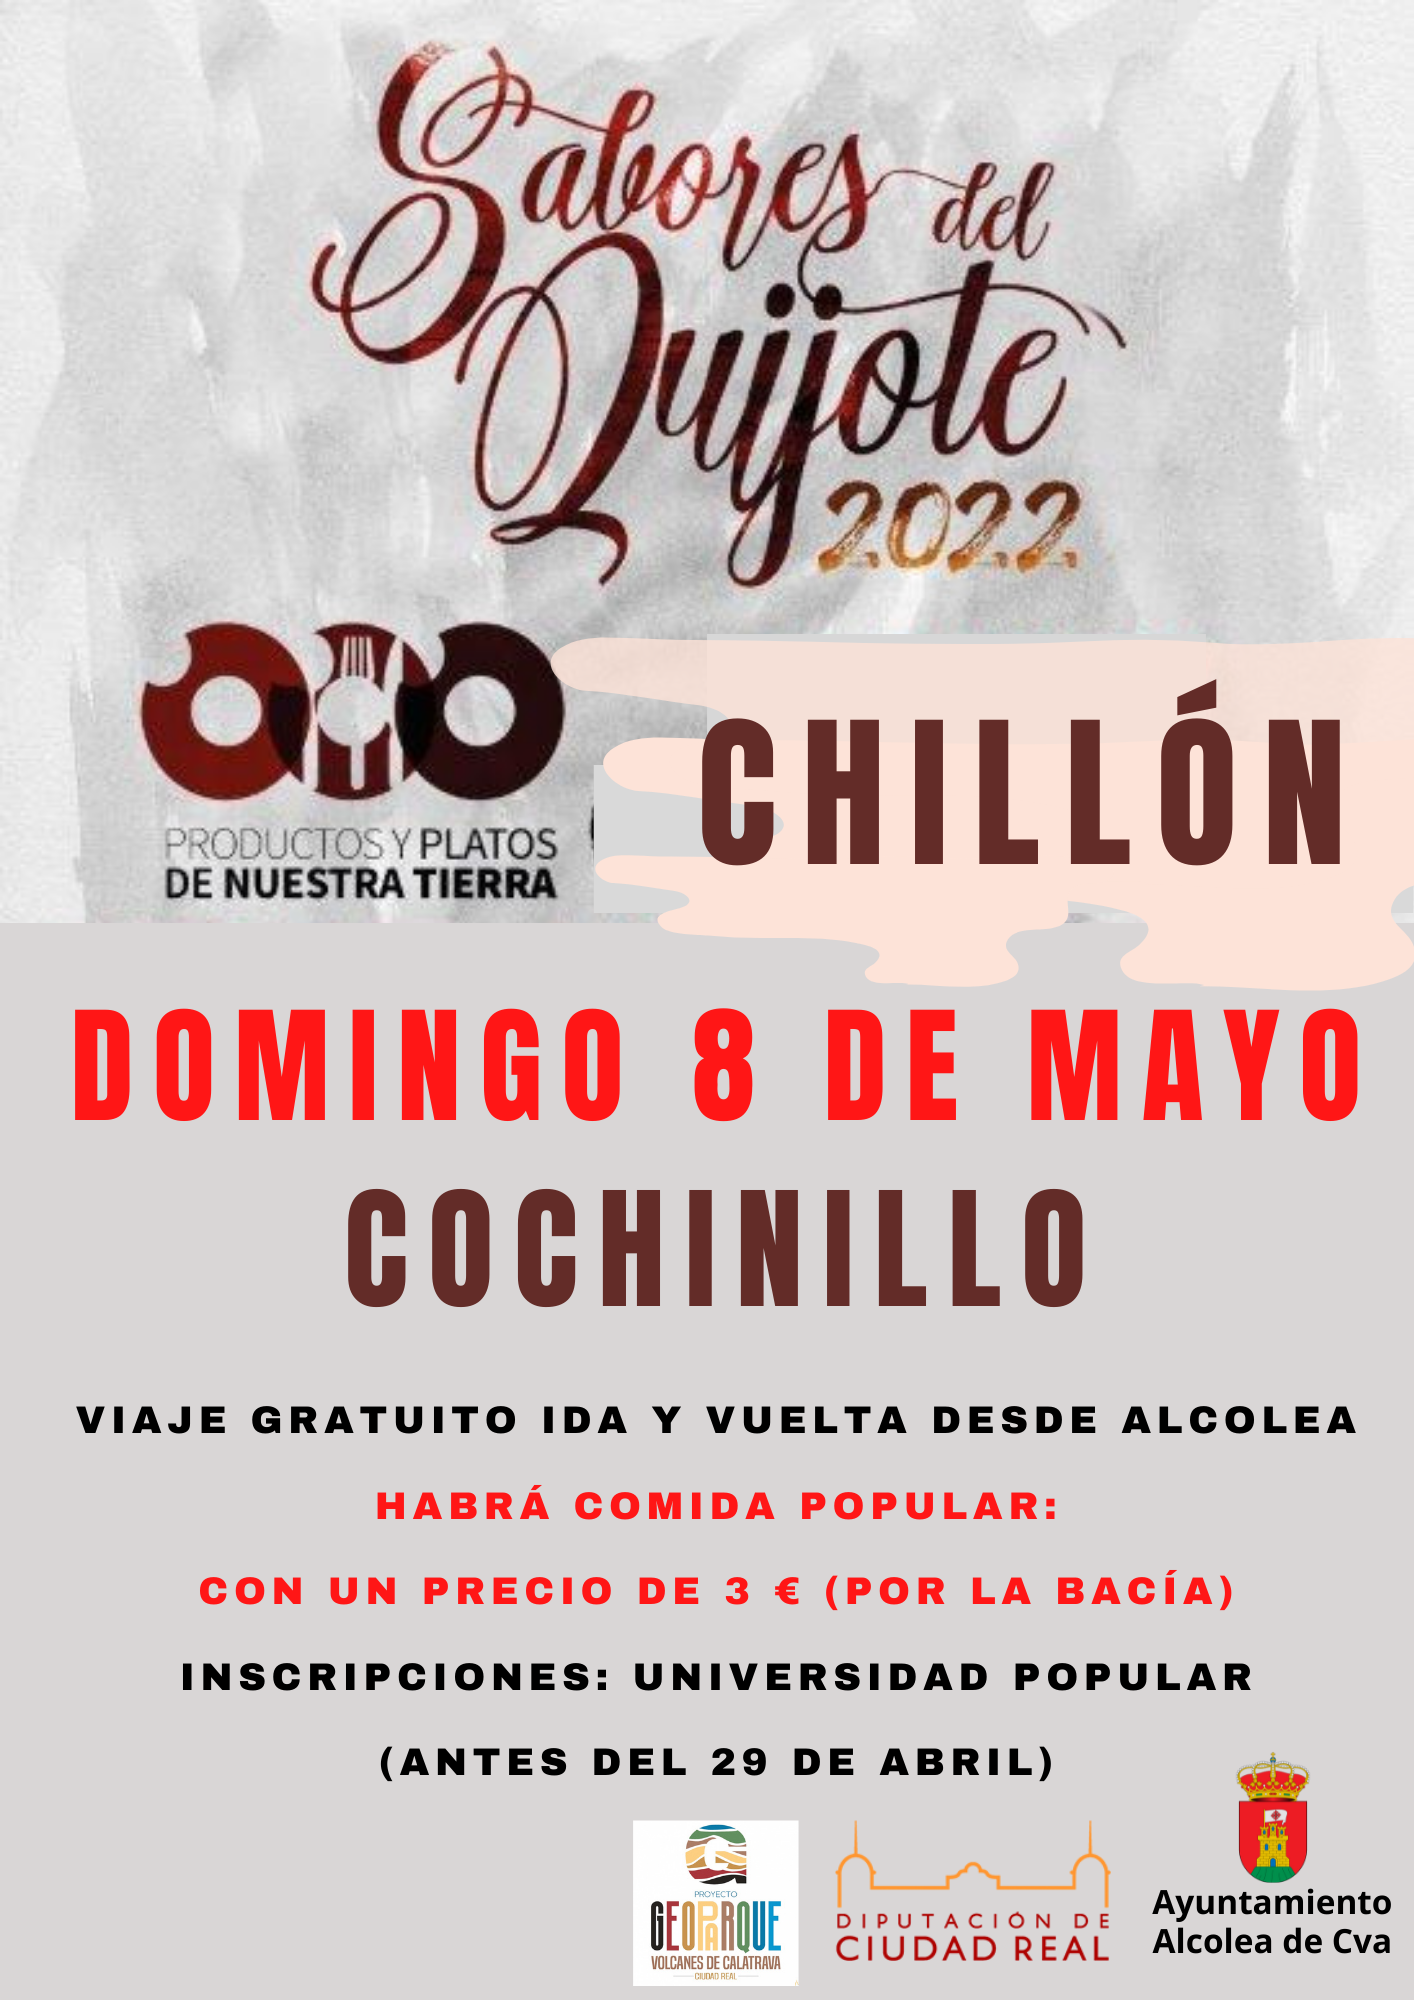 Sabores del Quijote 2022 (Chillón)